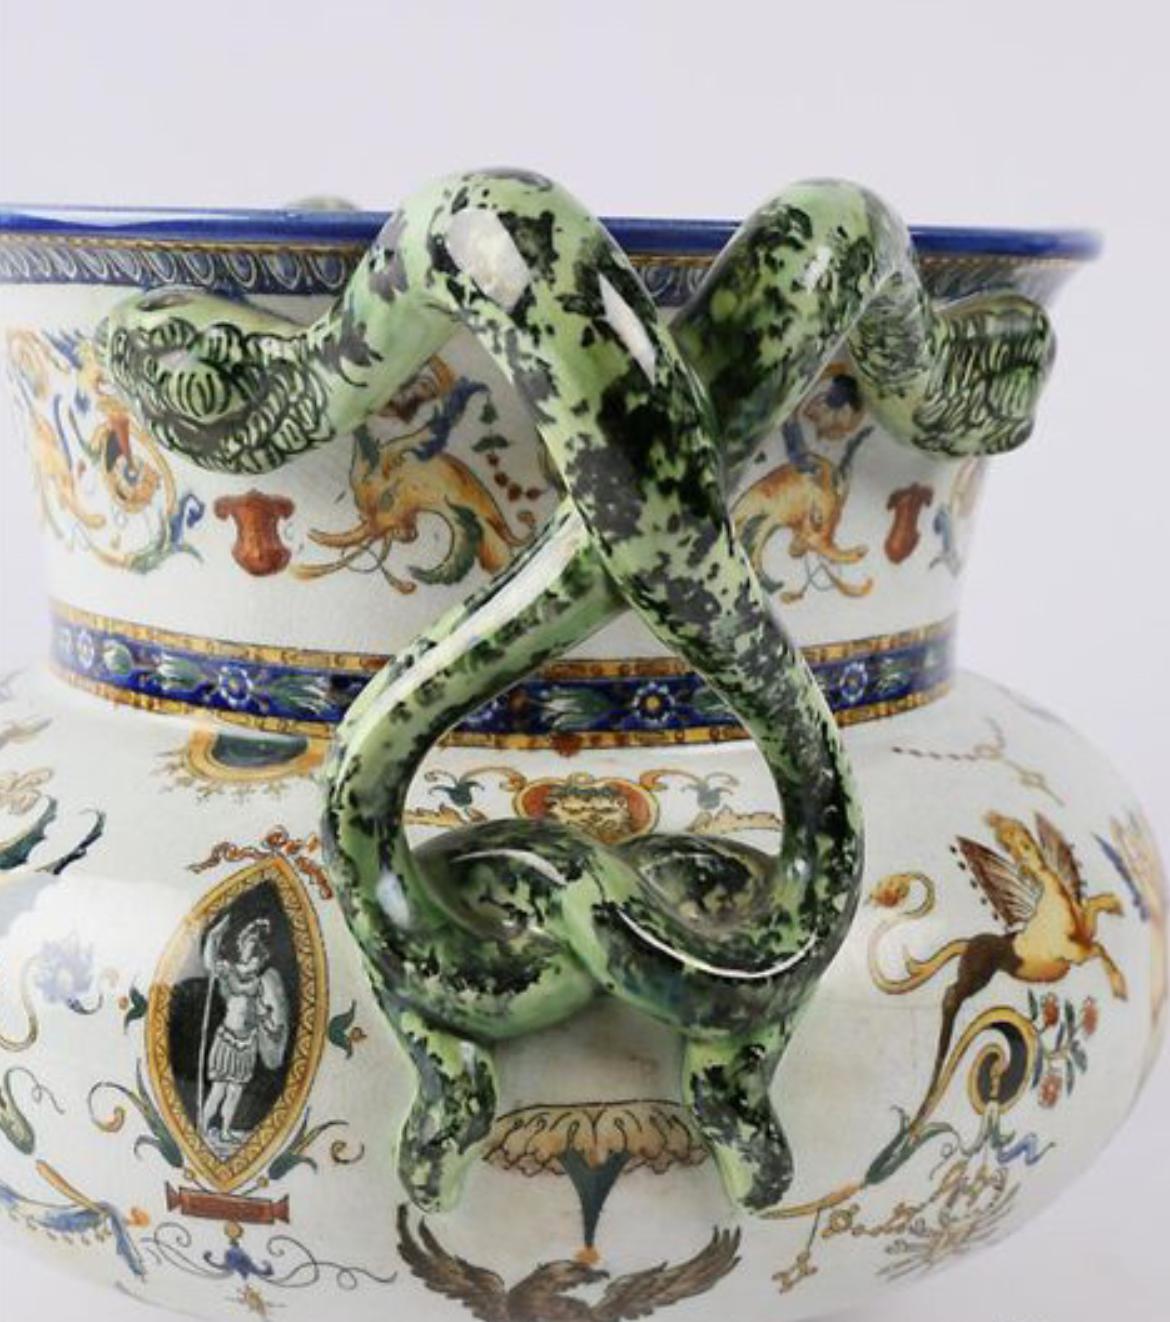 Vase finement peint à la main, décoré d'angelots, de sphinges et de médaillons Jean Bérain. Les poignées sont faites comme des serpents verts. Il repose sur une base tripode, les pieds en enroulements et il est numéroté au revers.
France, fin du